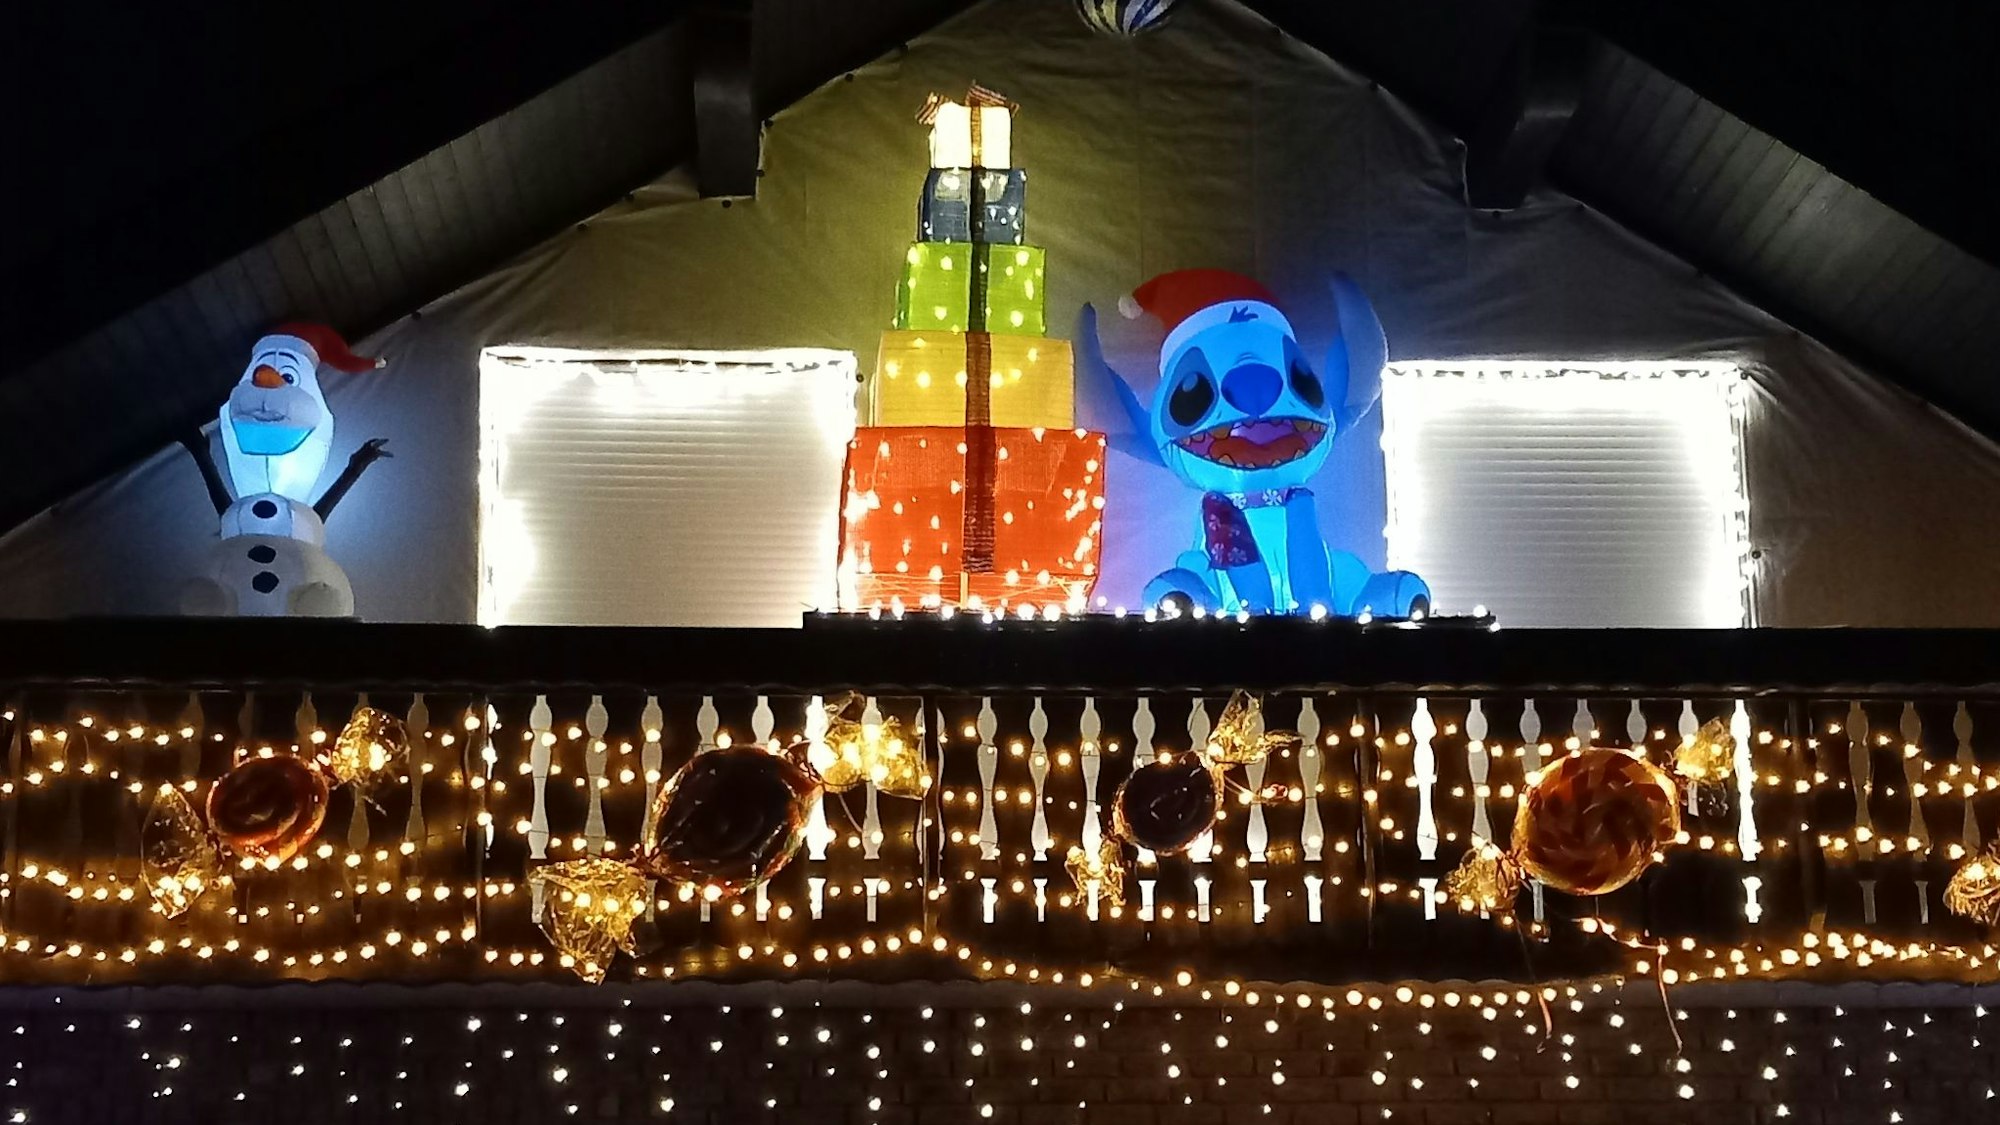 Die beleuchtete Comicfigur Stitch auf dem Balkon des Weihnachtshauses in Odendorf